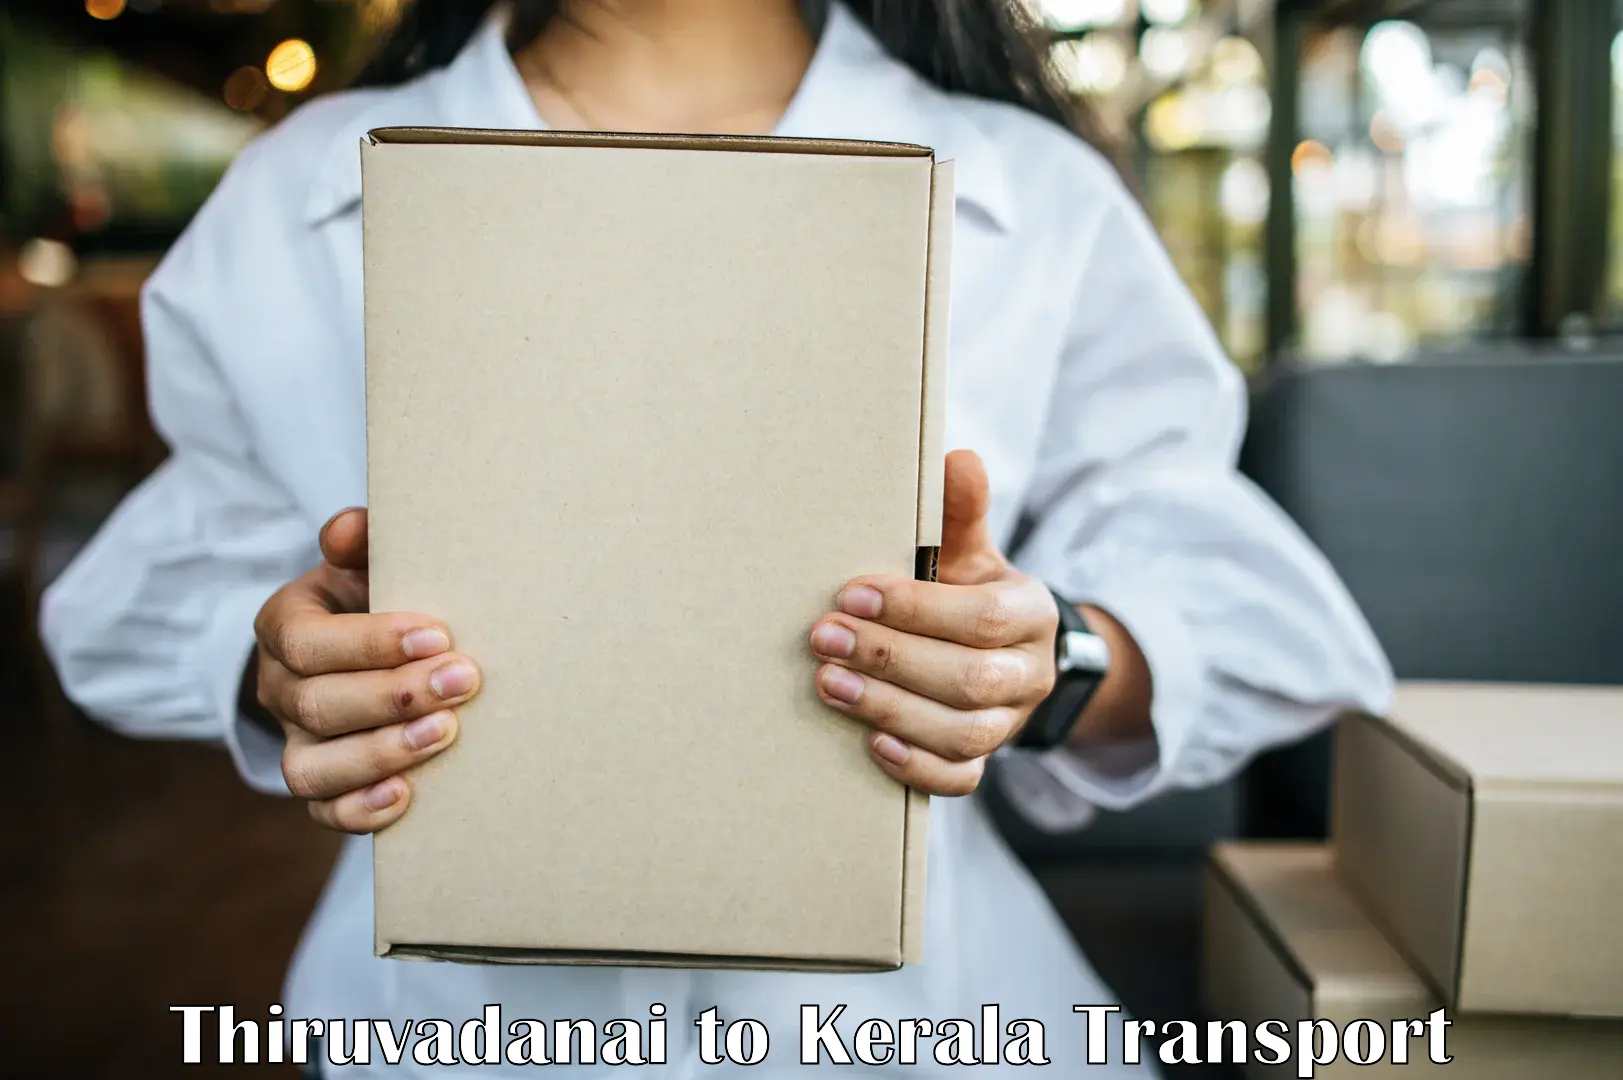 Online transport booking Thiruvadanai to Thiruvananthapuram